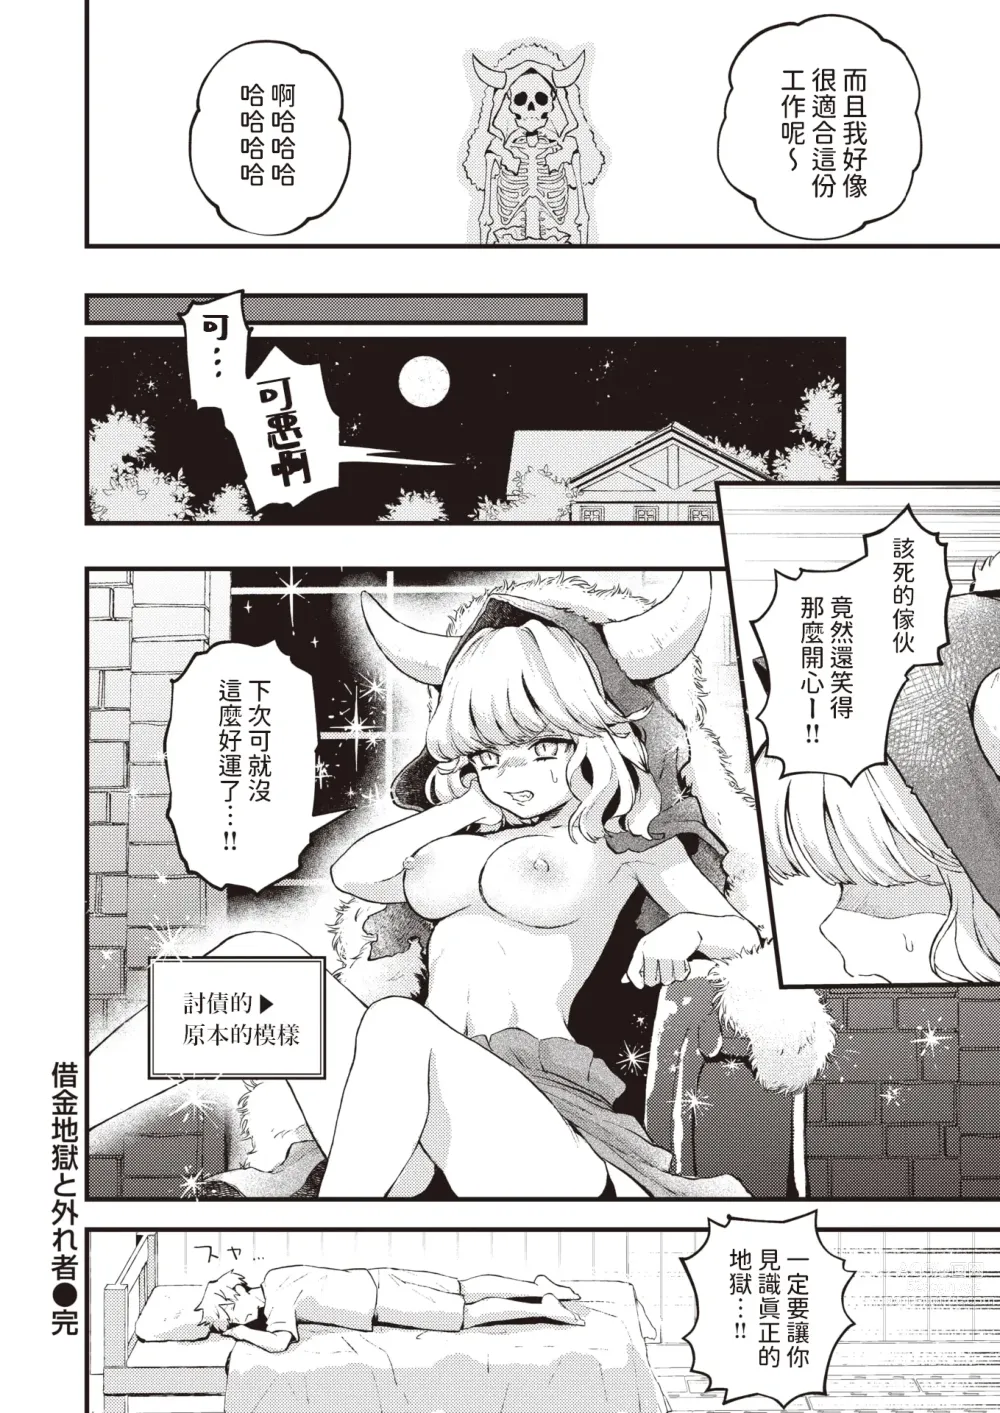 Page 24 of manga Shakkin Jigoku to Hazuremono